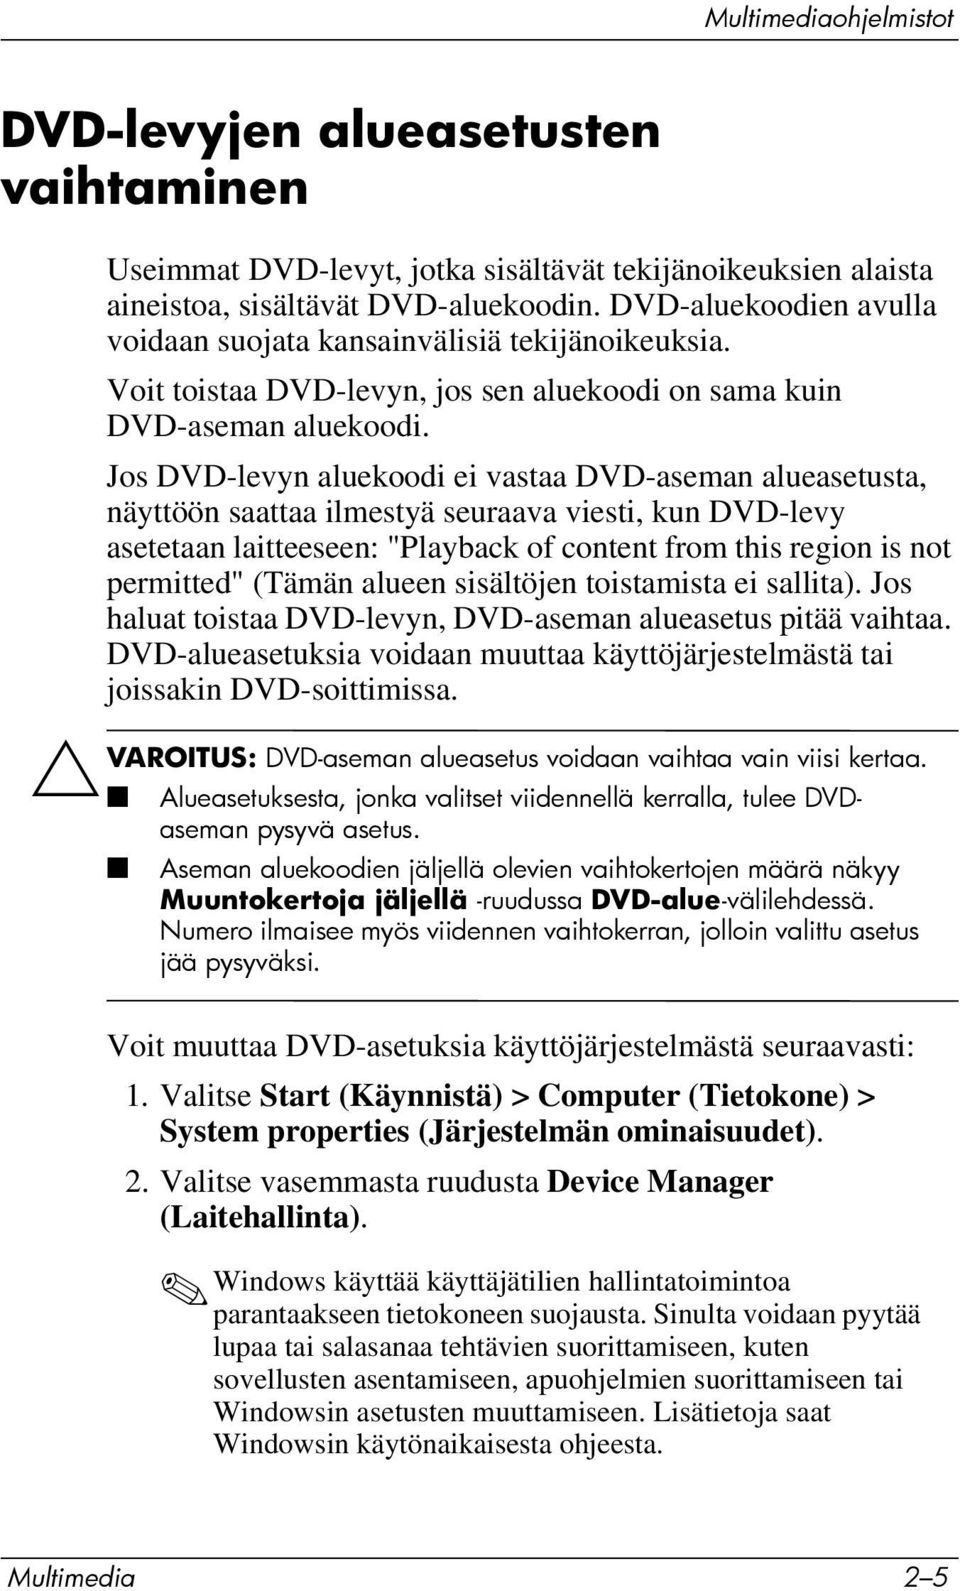 Jos DVD-levyn aluekoodi ei vastaa DVD-aseman alueasetusta, näyttöön saattaa ilmestyä seuraava viesti, kun DVD-levy asetetaan laitteeseen: "Playback of content from this region is not permitted"